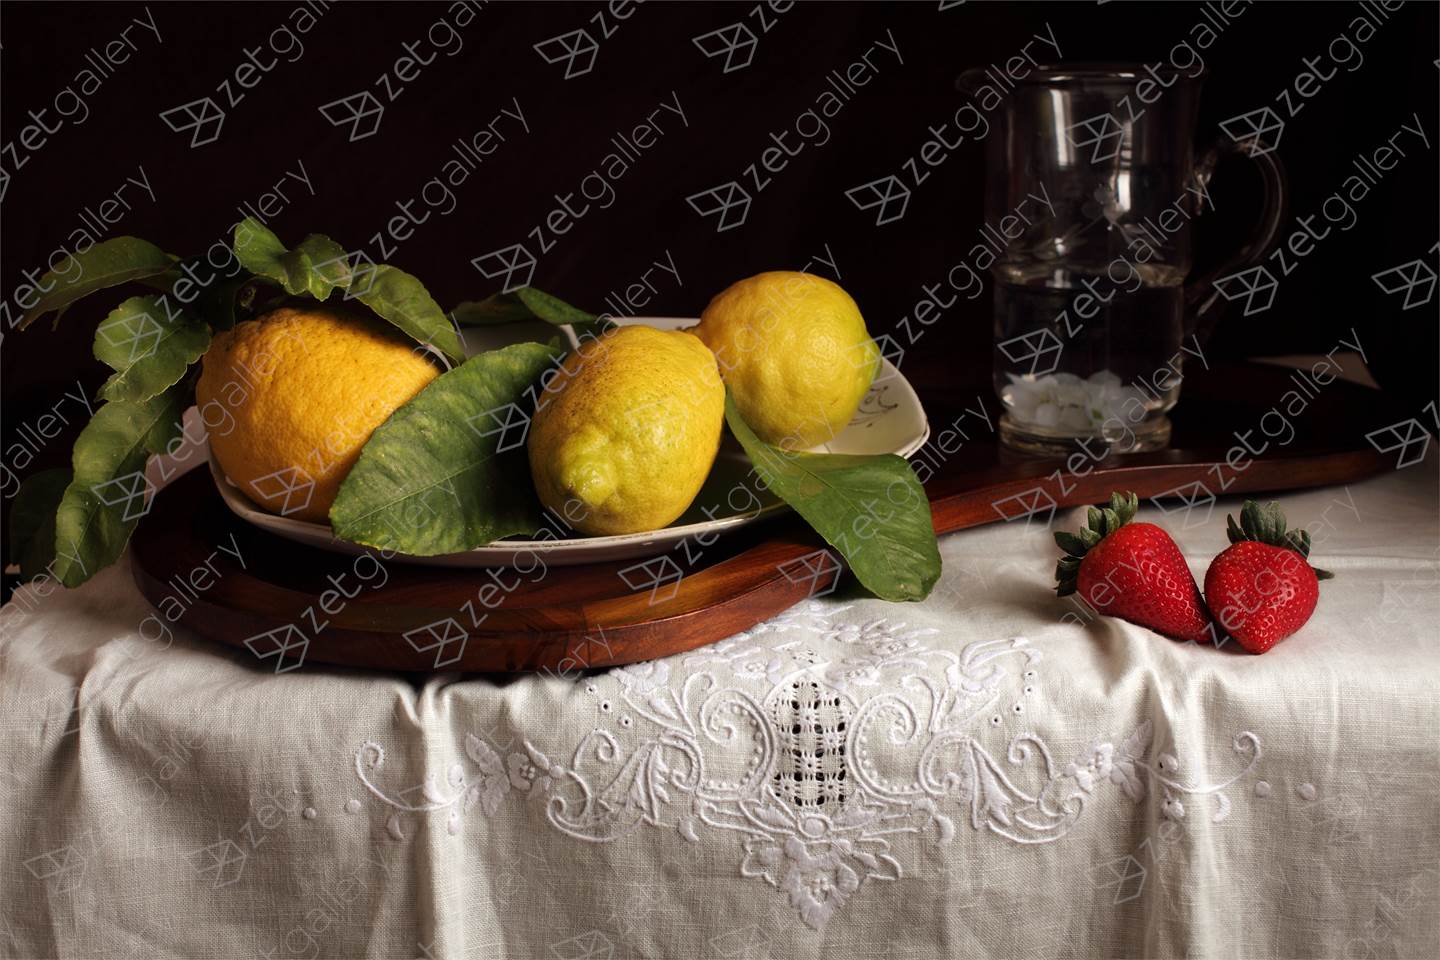 Bodegón de los limones y las fresas, original Naturaleza muerta Digital Fotografía de Cecilia Gilabert